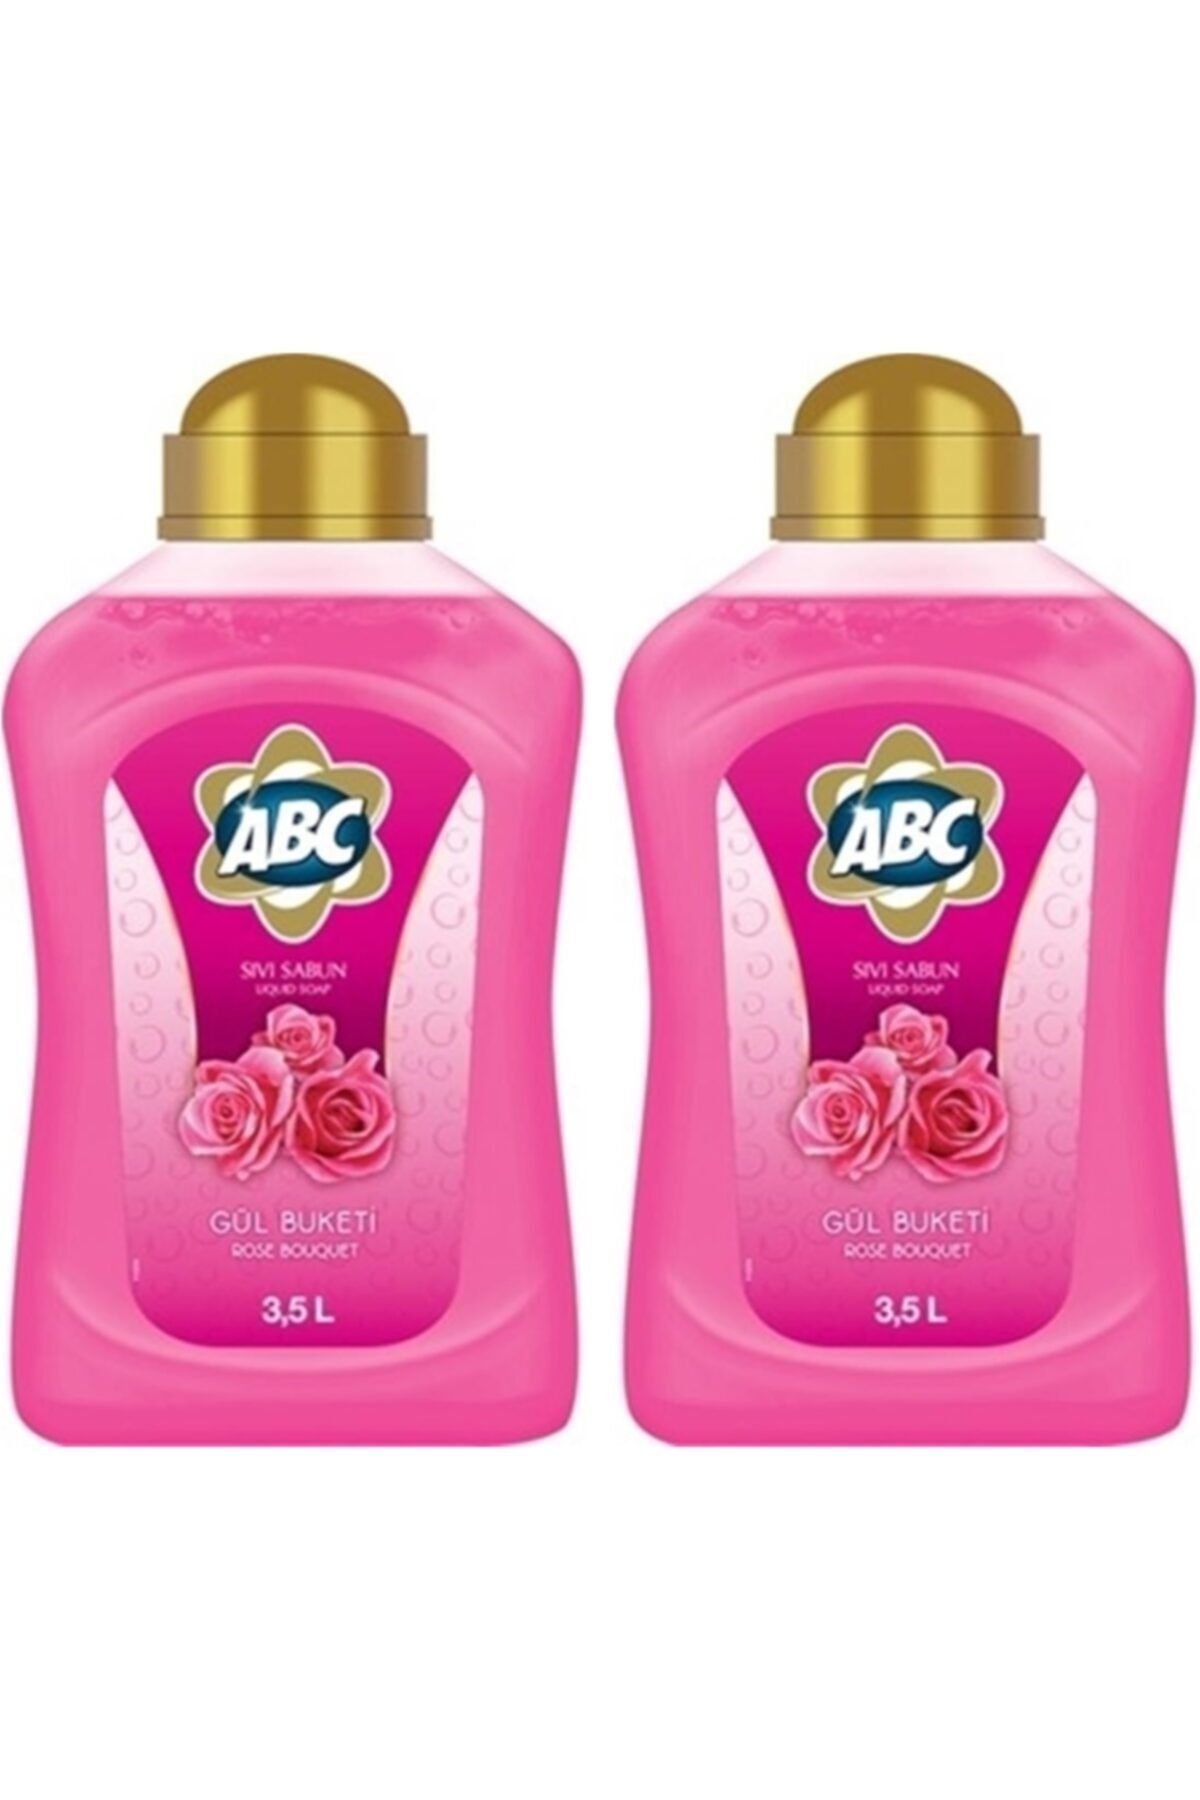 ABC Sıvı Sabun Gül Buketi 2 X 3,5lt